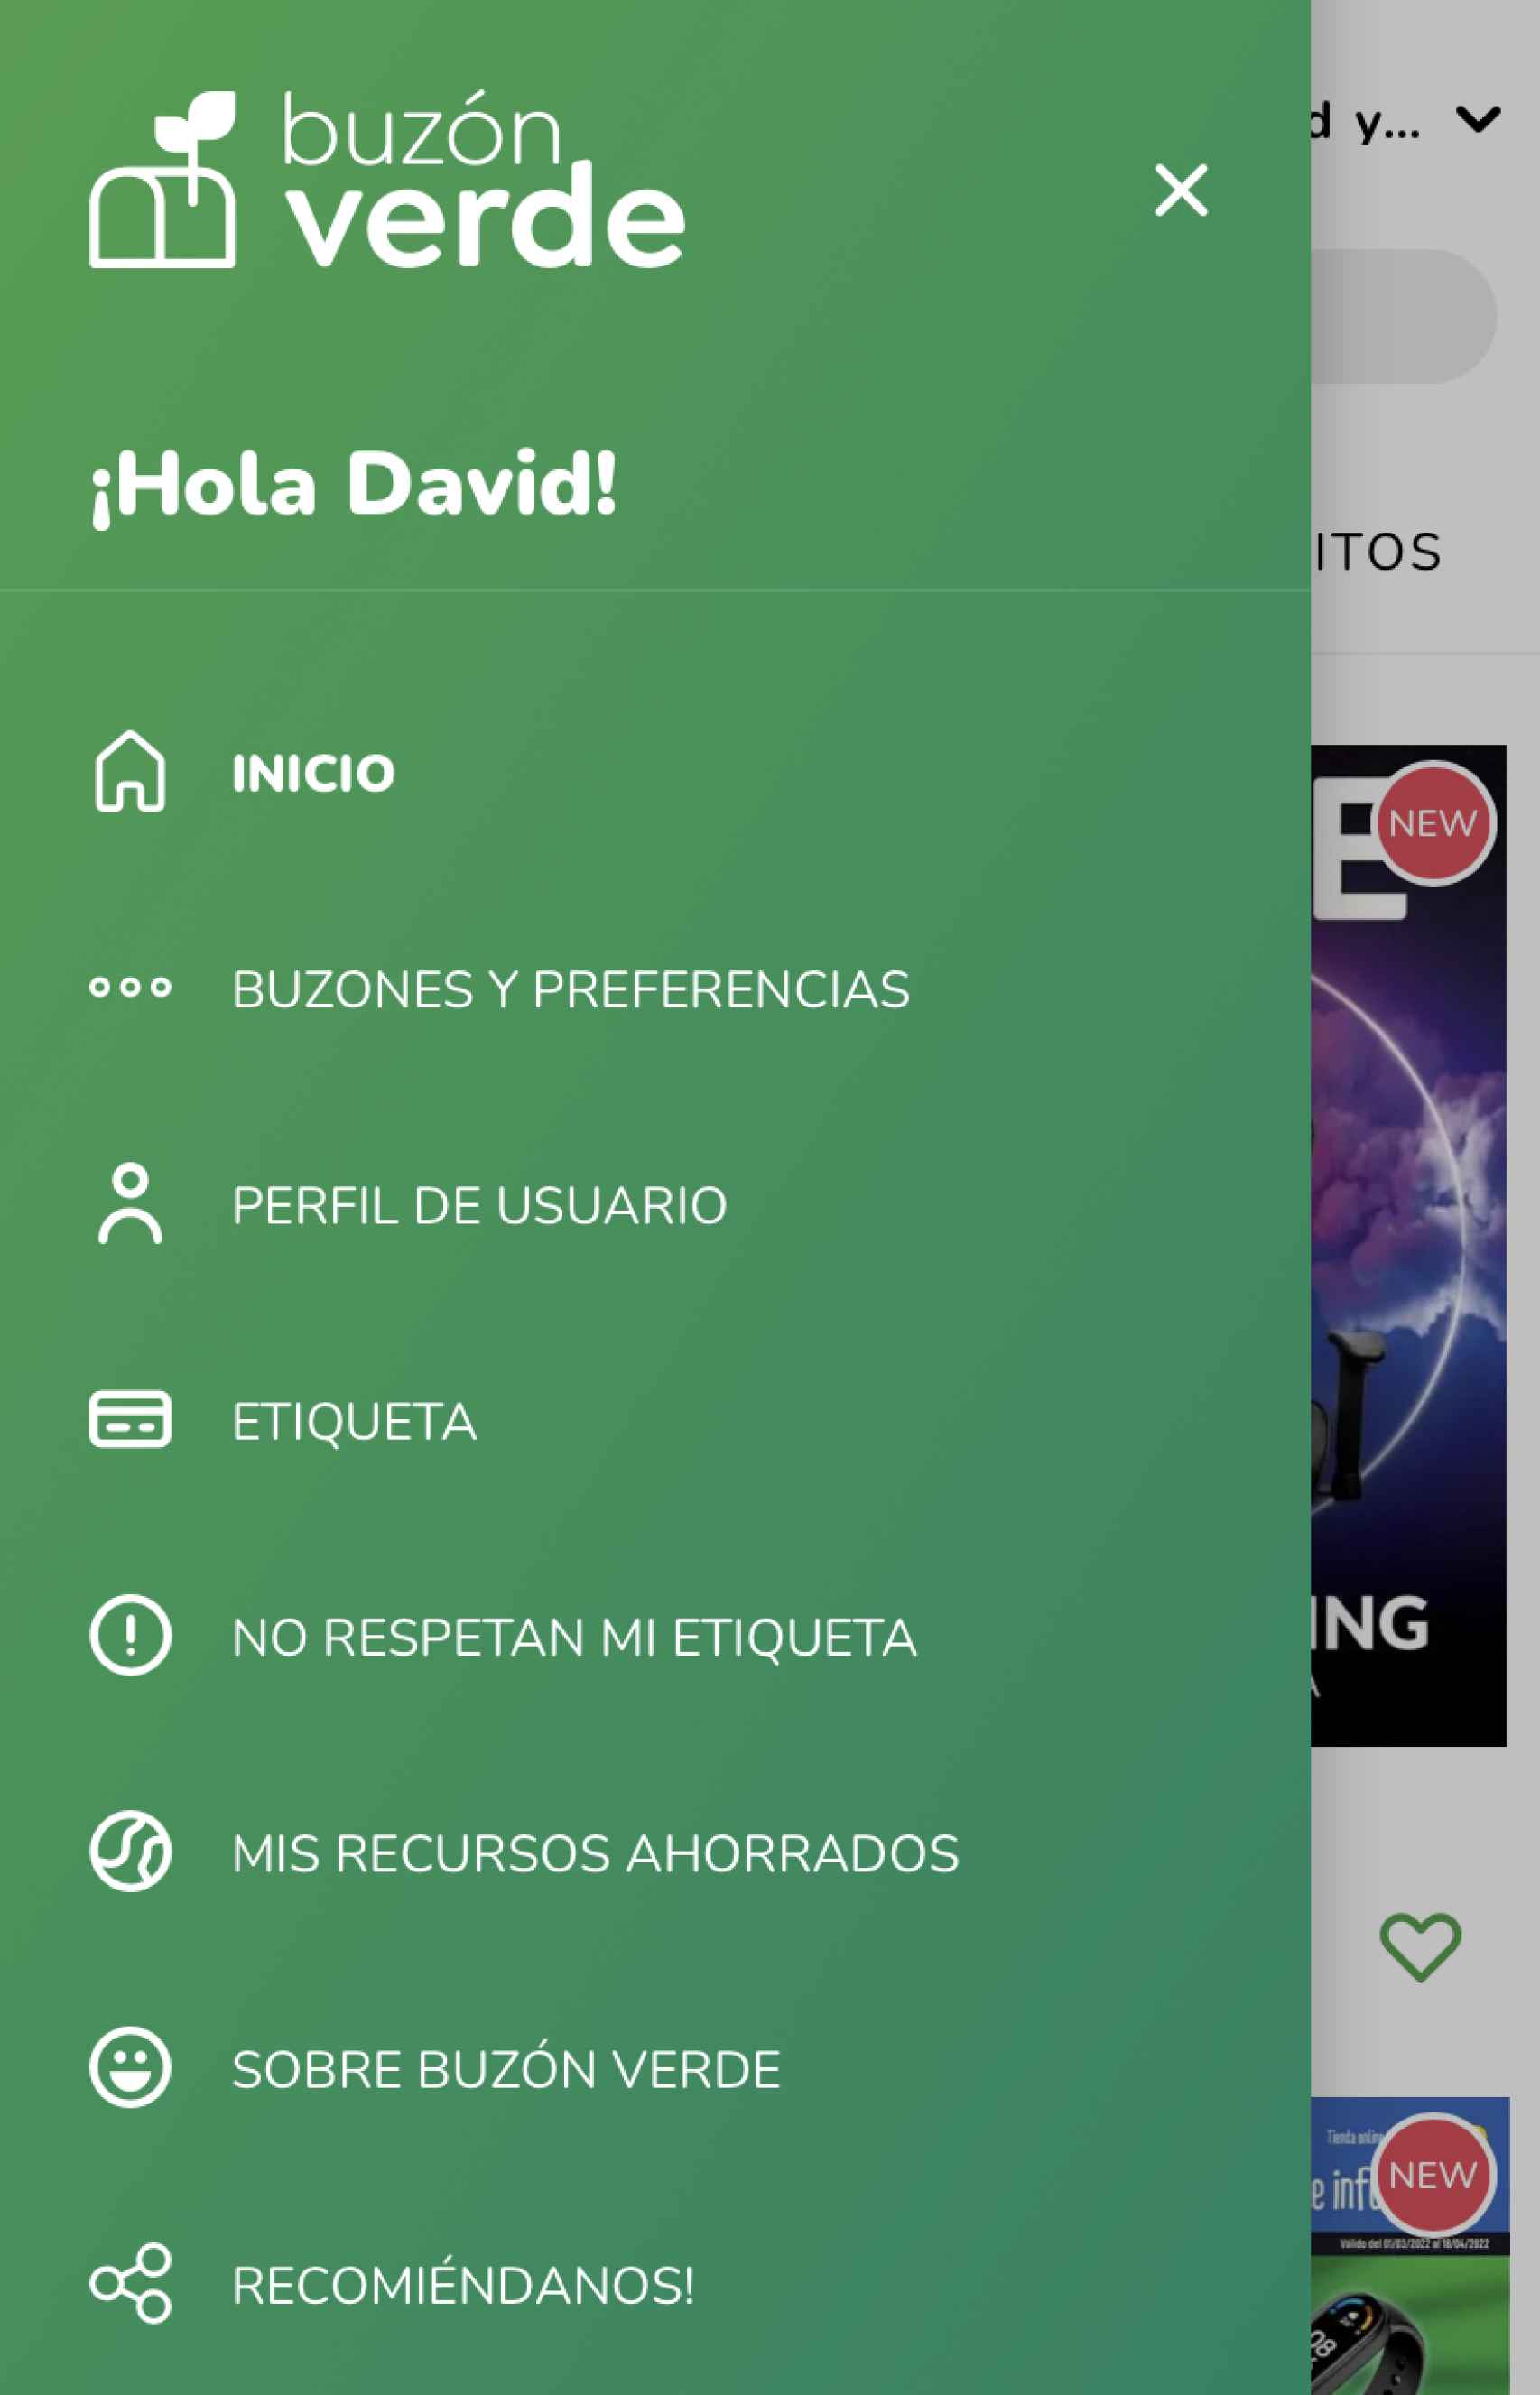 Pantallazo del menú de navegación de la app Buzón Verde